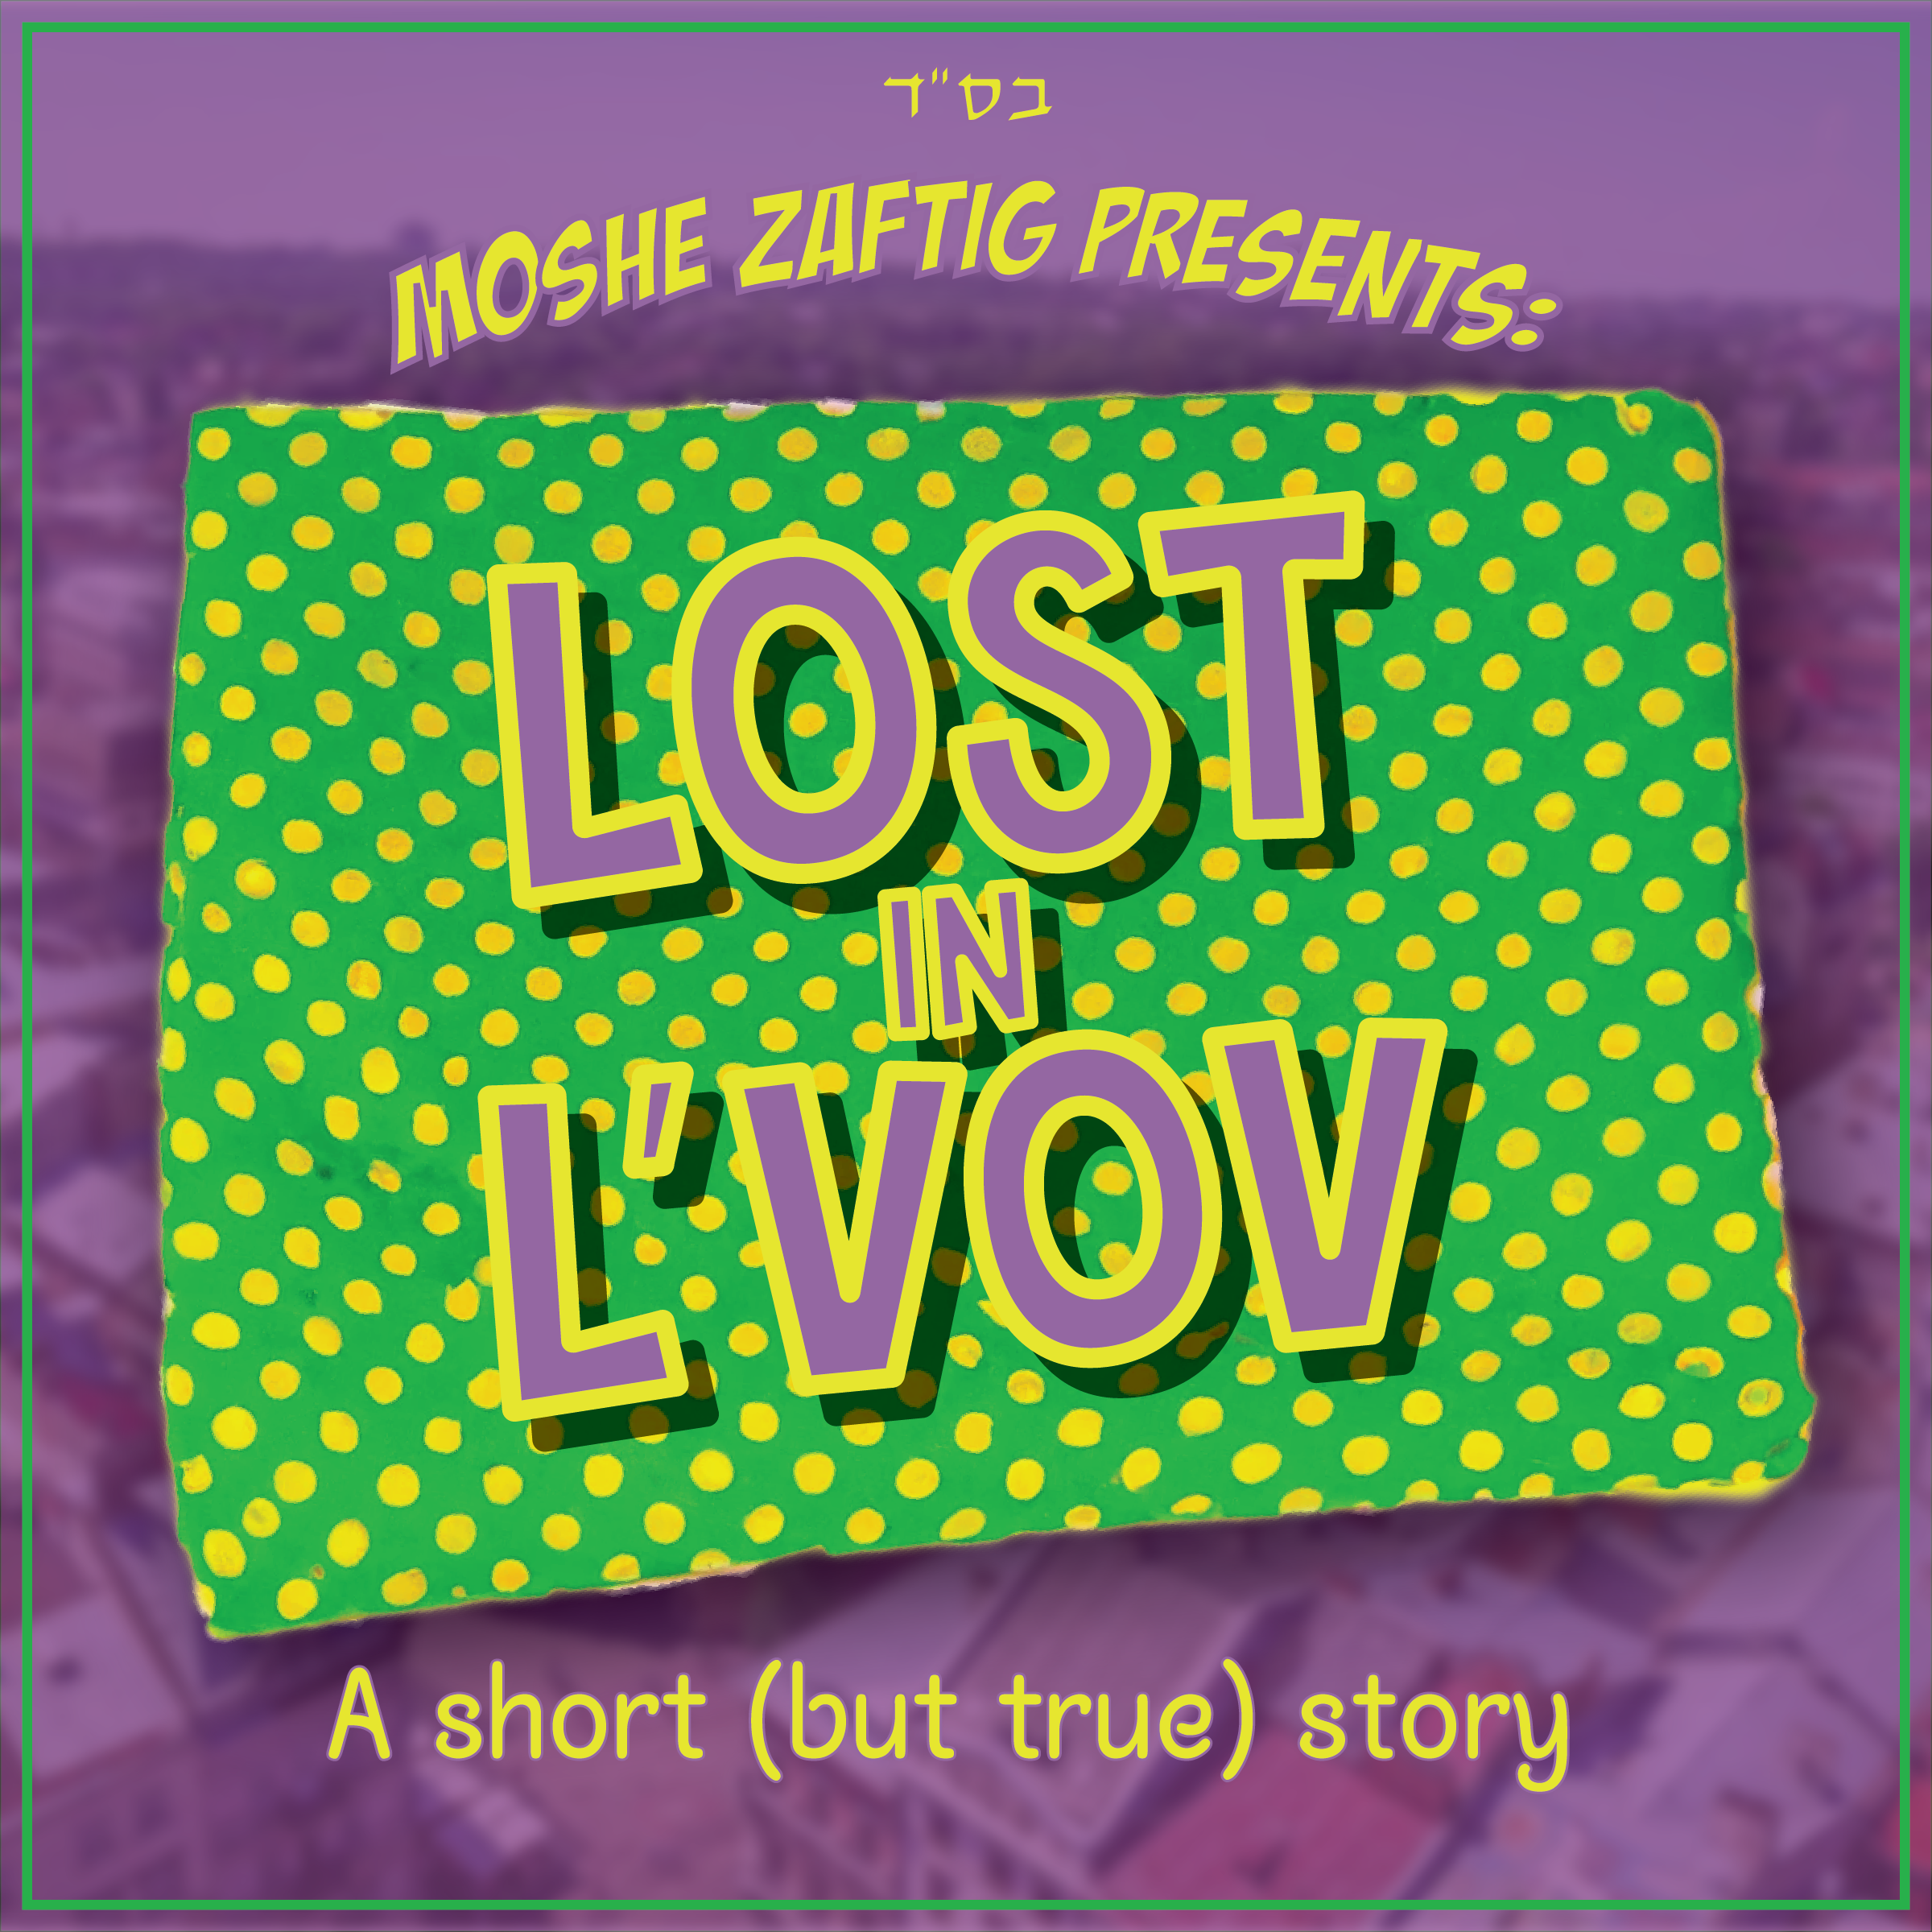 Moshe Zaftig - Lost in L'vov [Story] (Single)